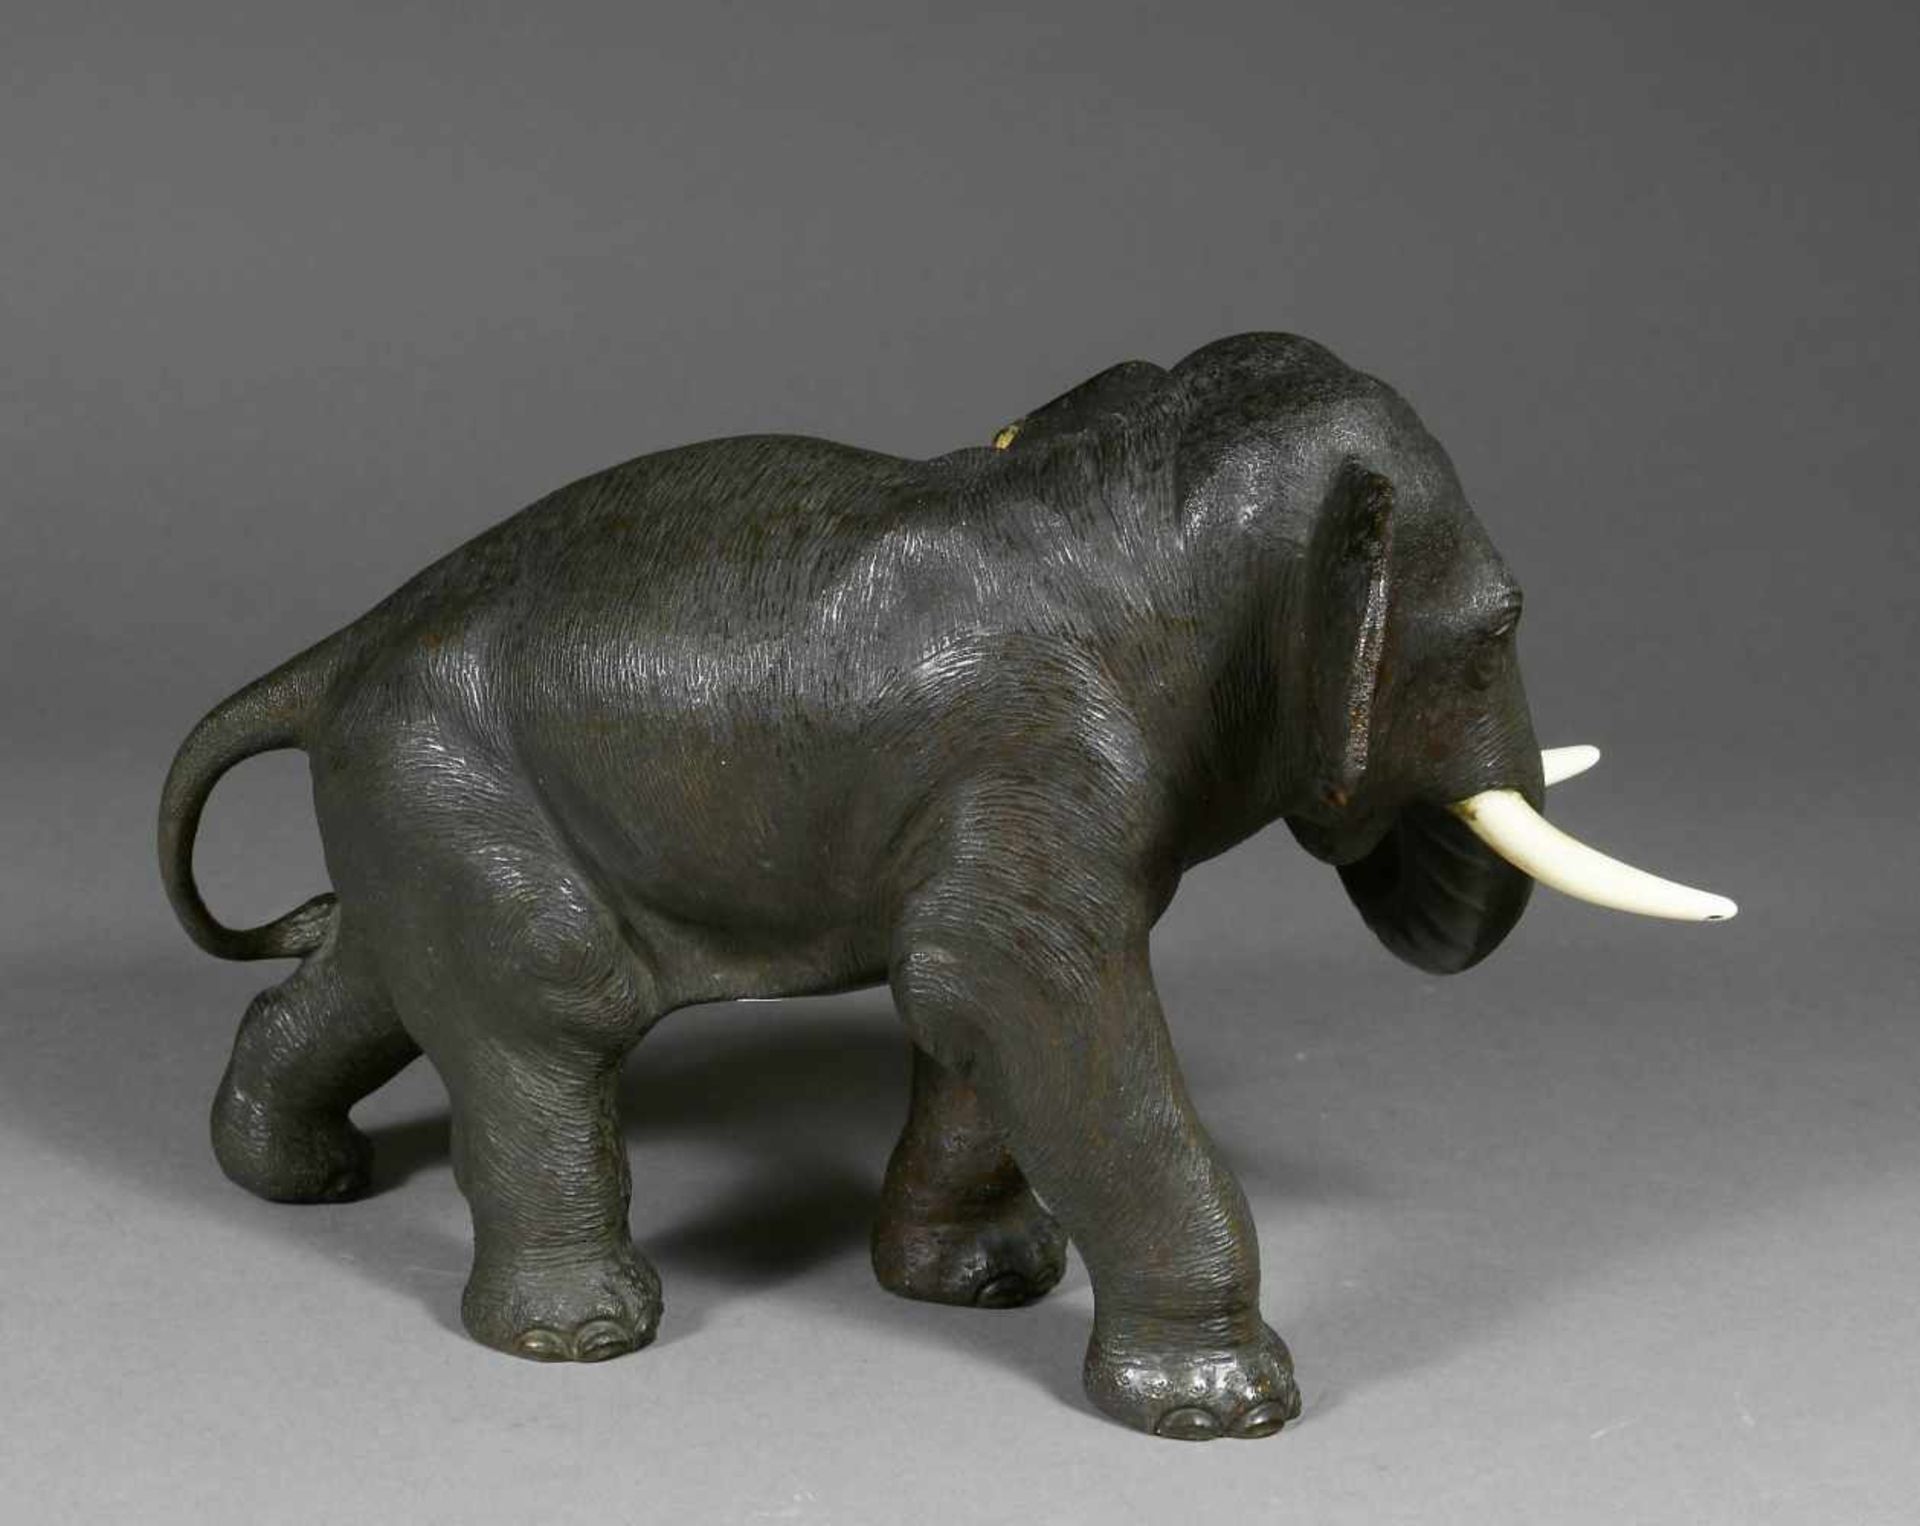 Japan, Bronze, Schreitender Elefant, Meijimit Elfenbein-Stoßzähnen. 17,5 x 27 x 9 cm. Am Bauch mit - Image 2 of 3